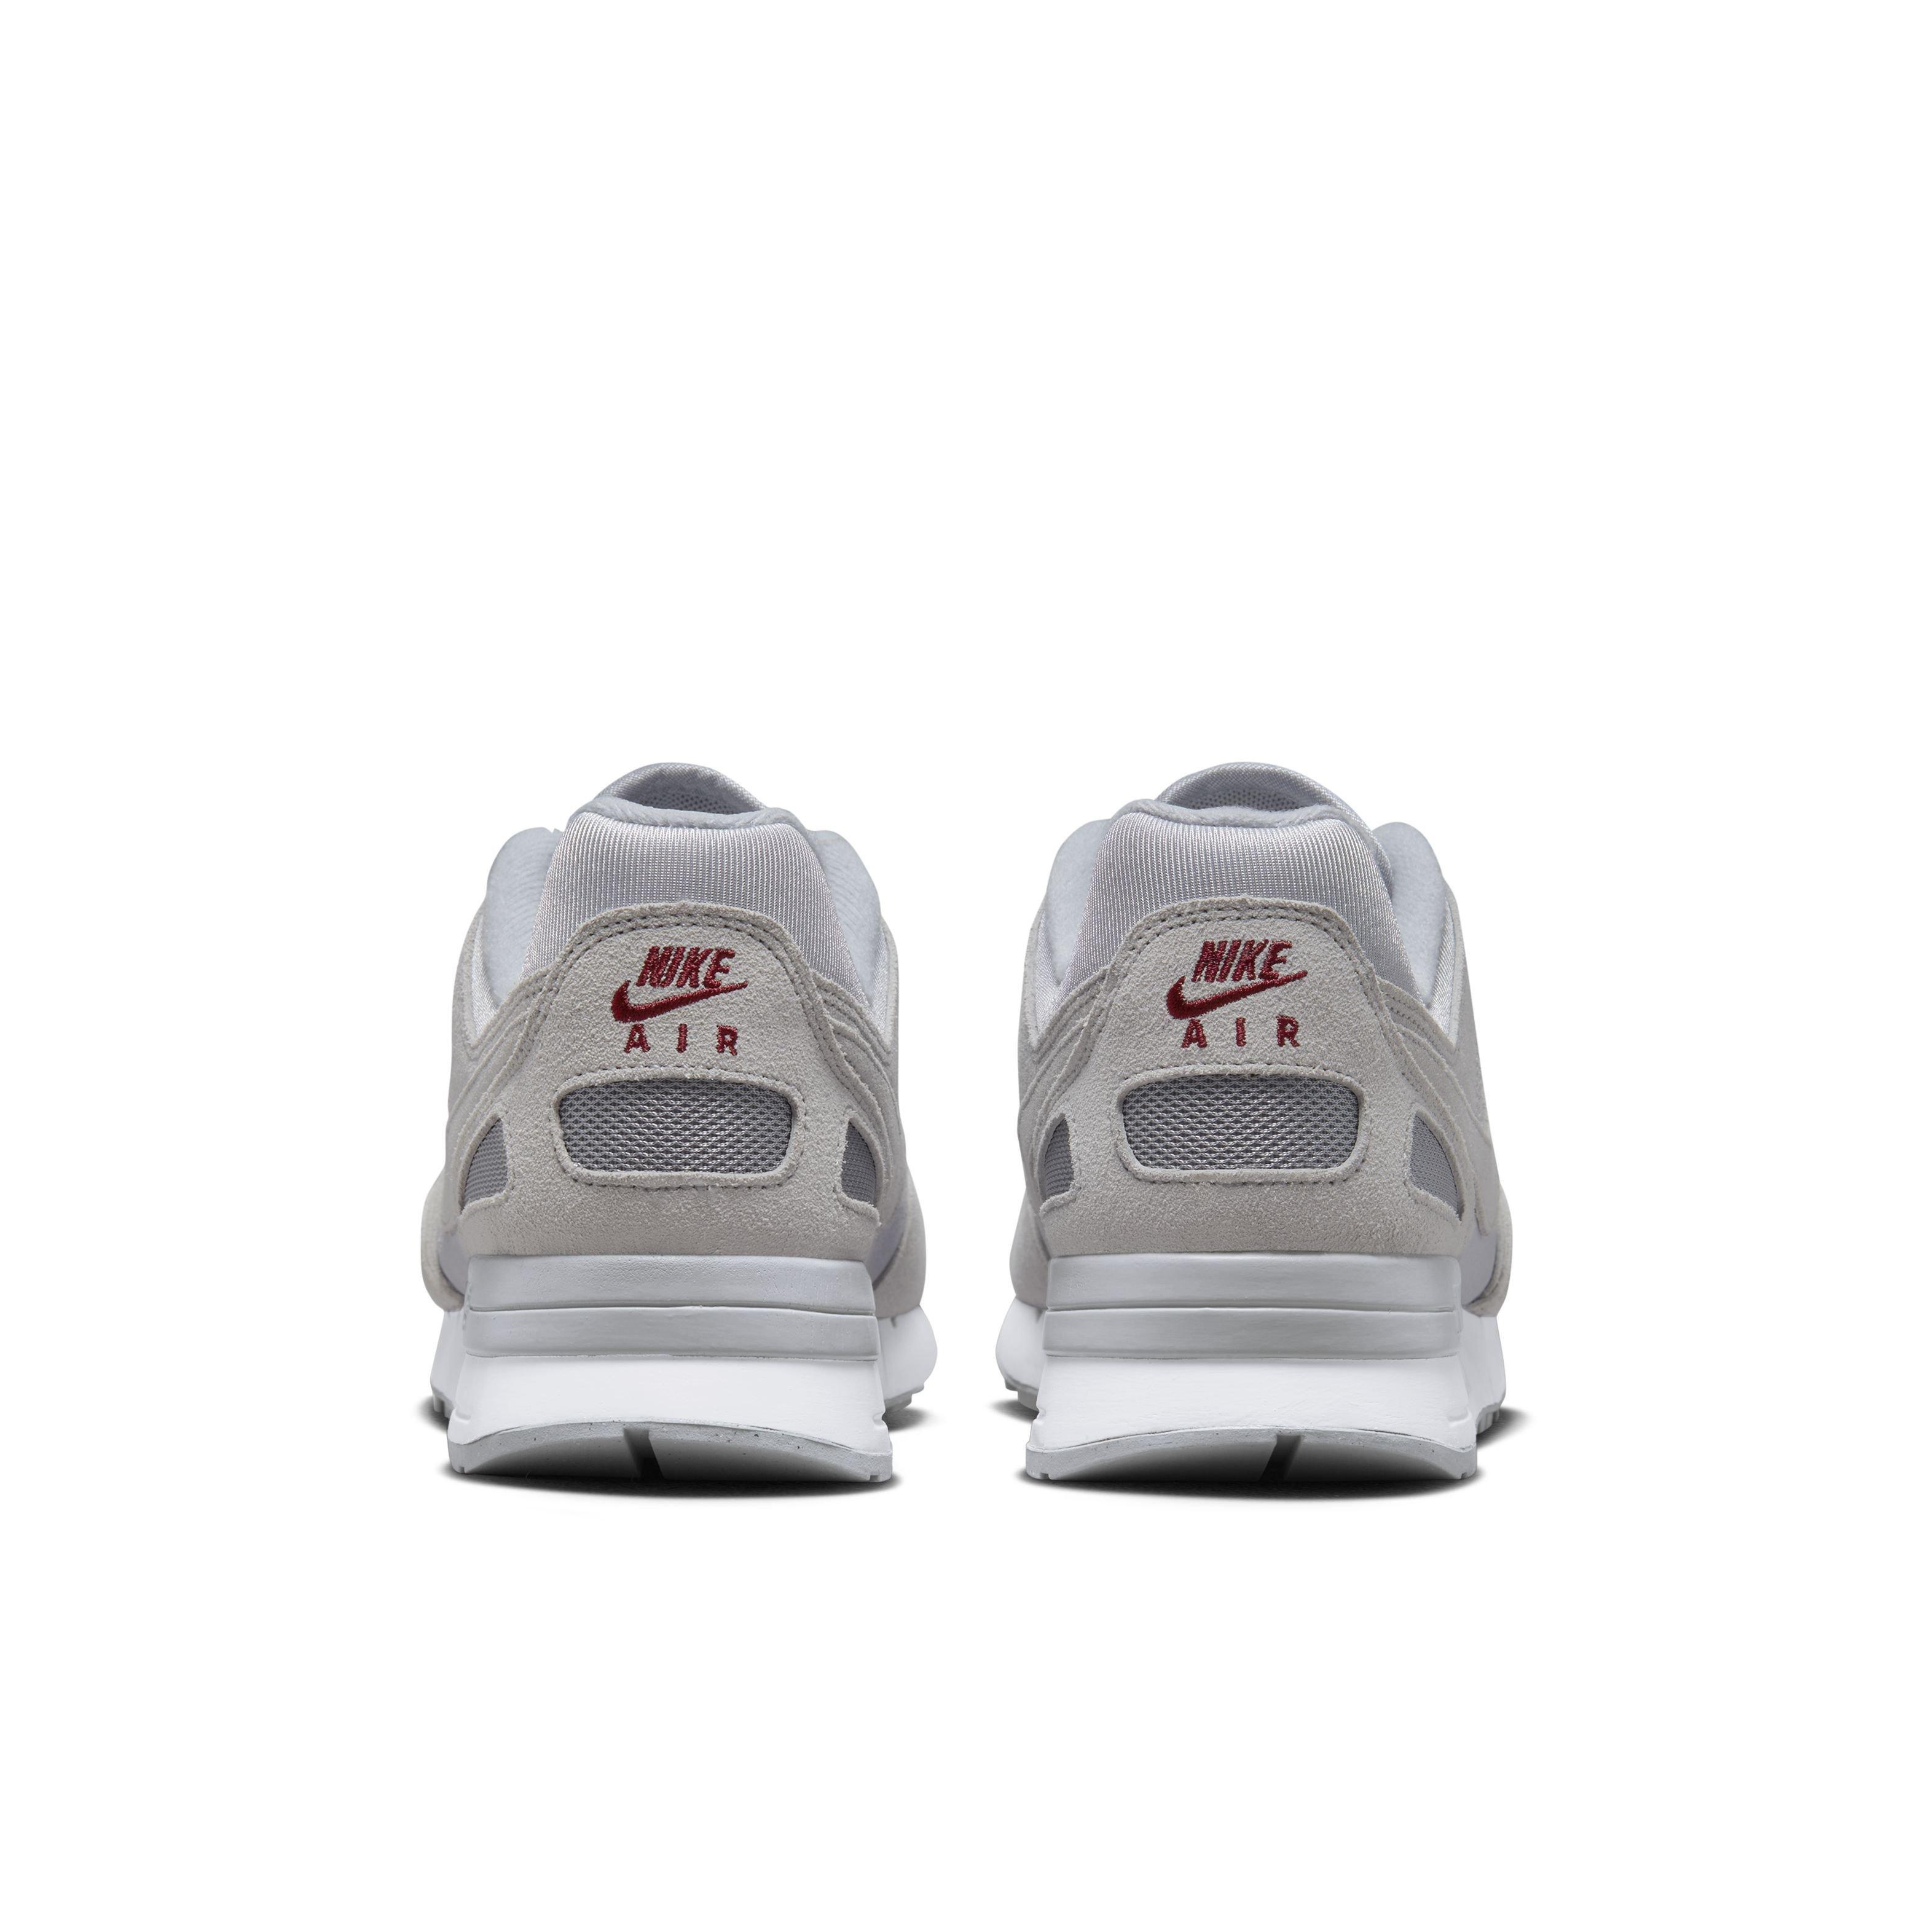 Nike Air Pegasus '89 "Wolf Grey/Team Red/White/Wolf Grey" Shoe